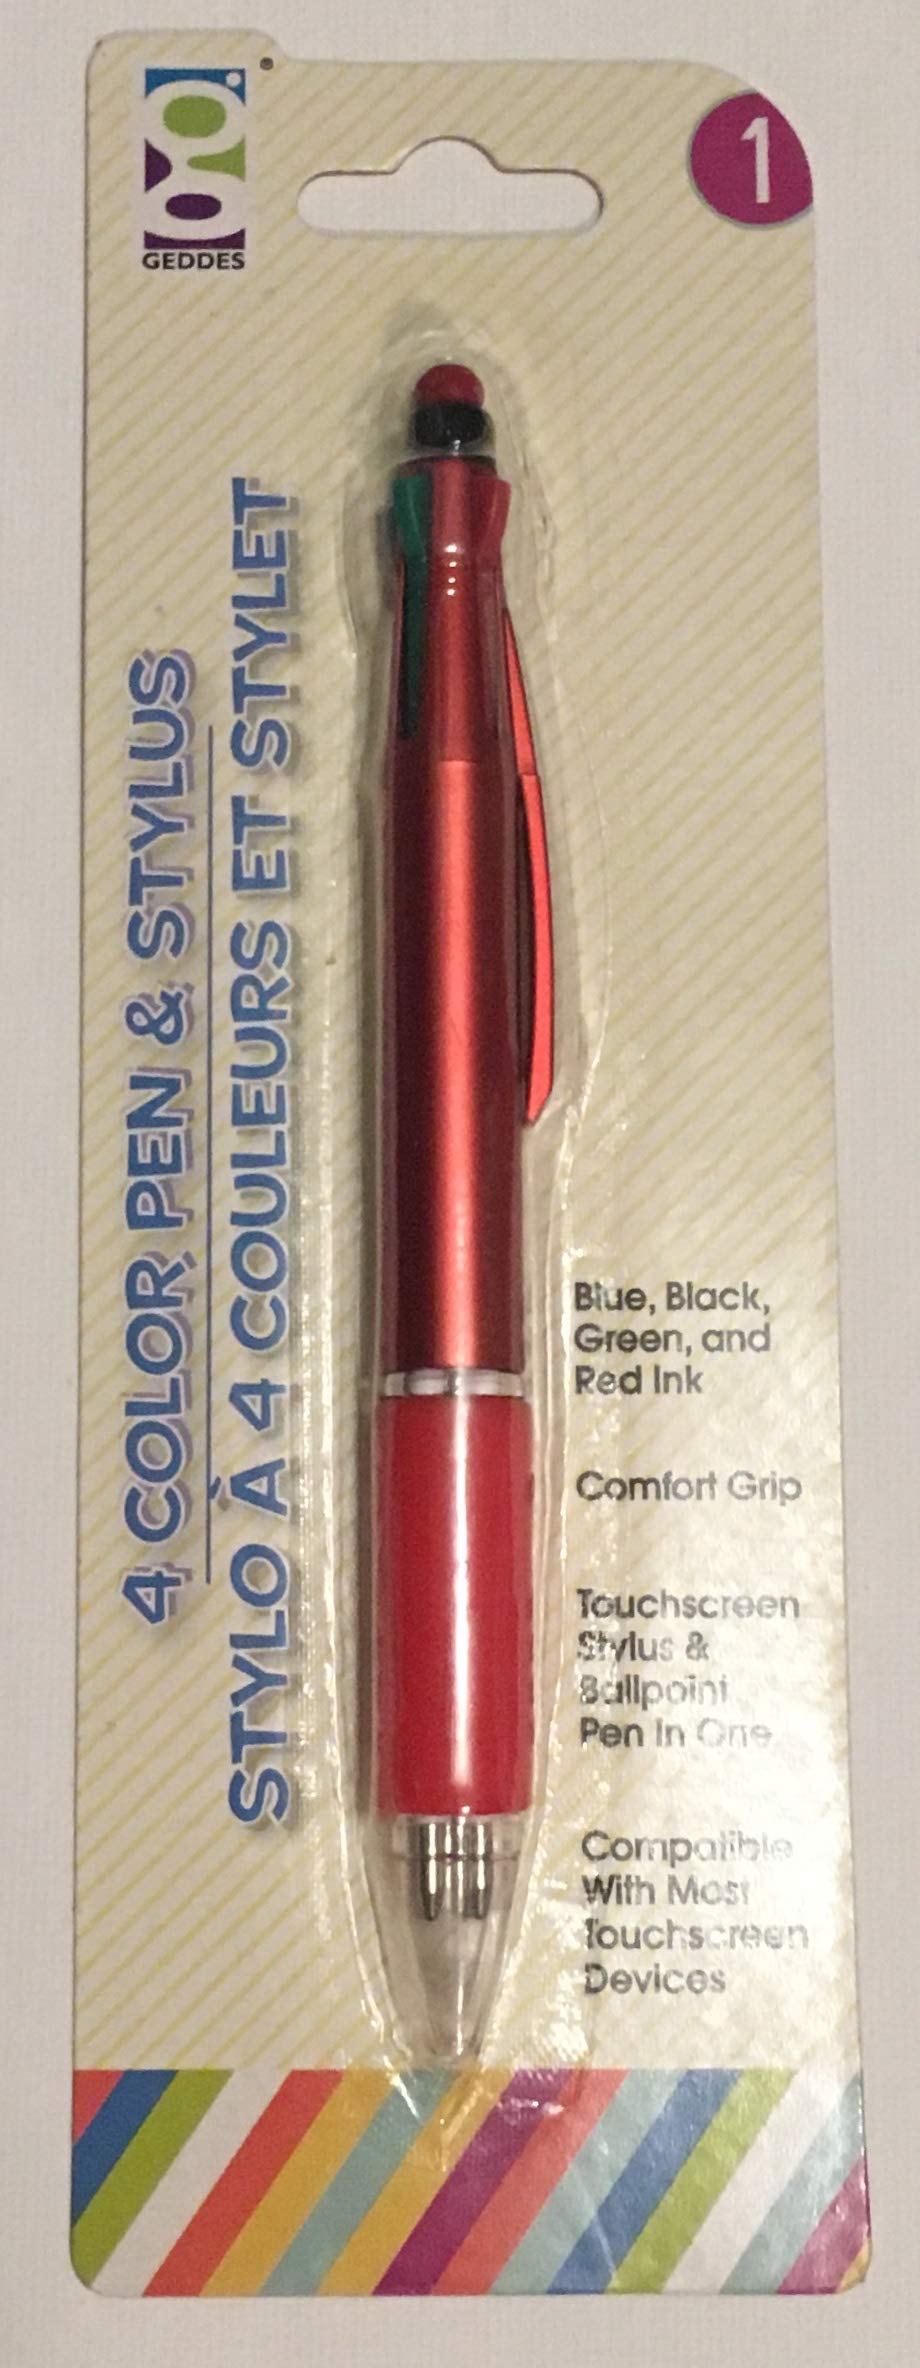 [Australia - AusPower] - 4 Color Pen and Stylus 